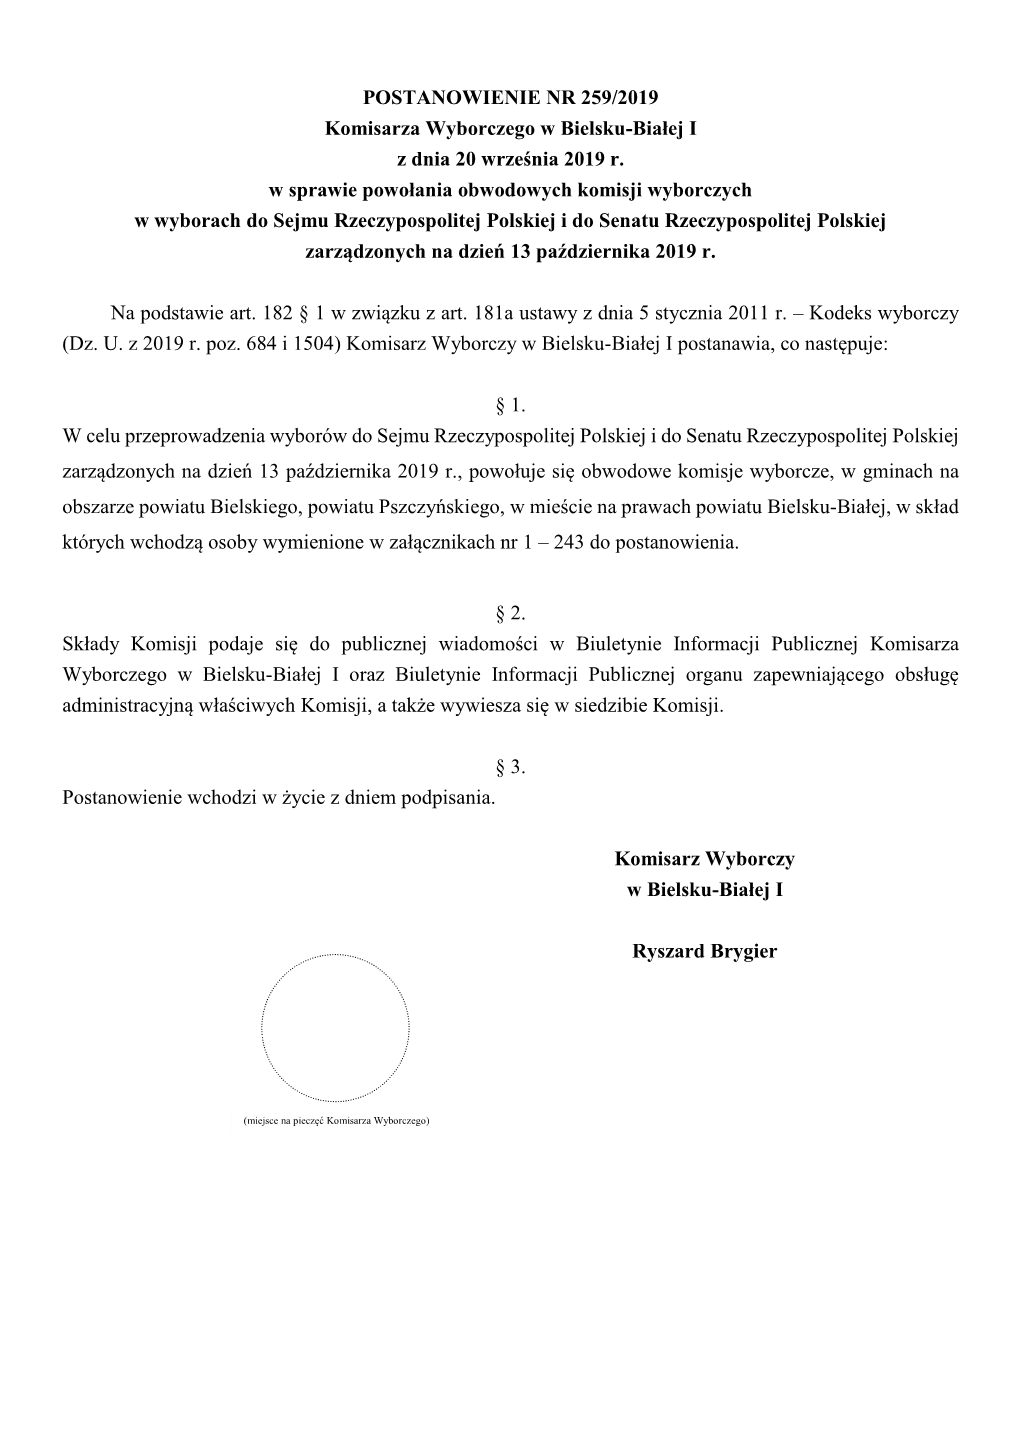 POSTANOWIENIE NR 259/2019 Komisarza Wyborczego W Bielsku-Białej I Z Dnia 20 Września 2019 R